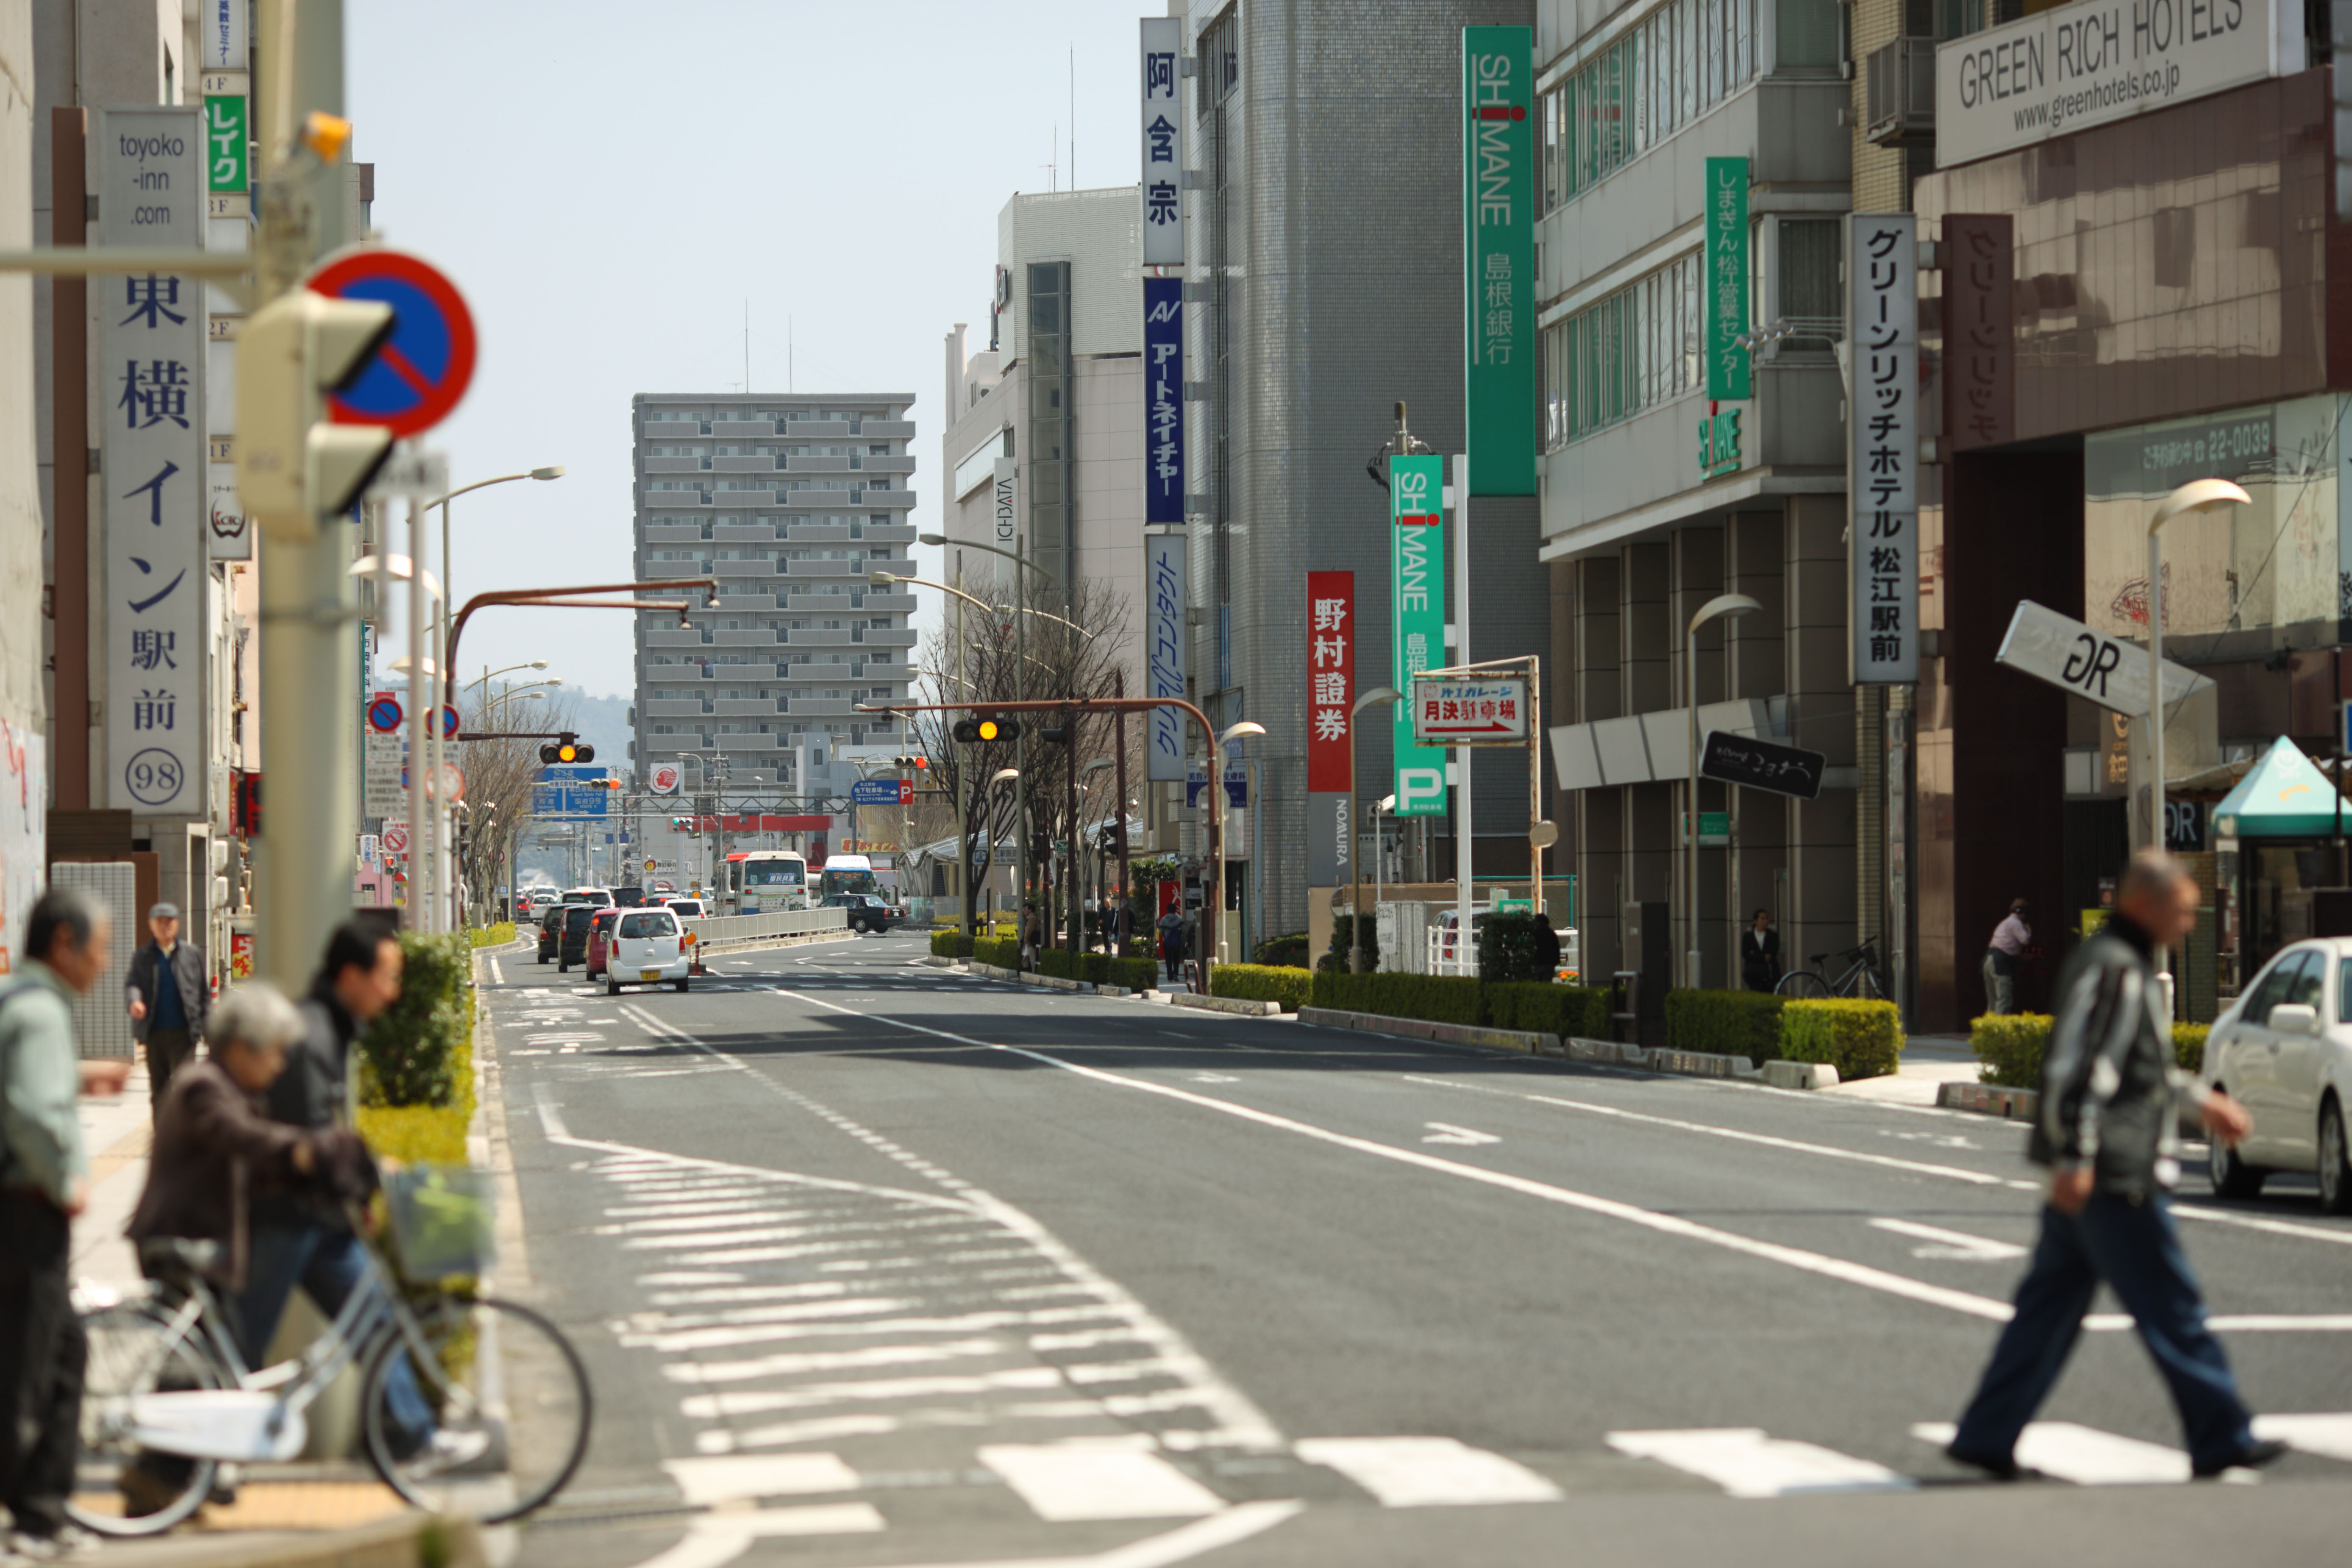 fotografia, material, livra, ajardine, imagine, proveja fotografia,A cidade de Matsue, passagem para pedestres, Asfalto, estrada, linha branca